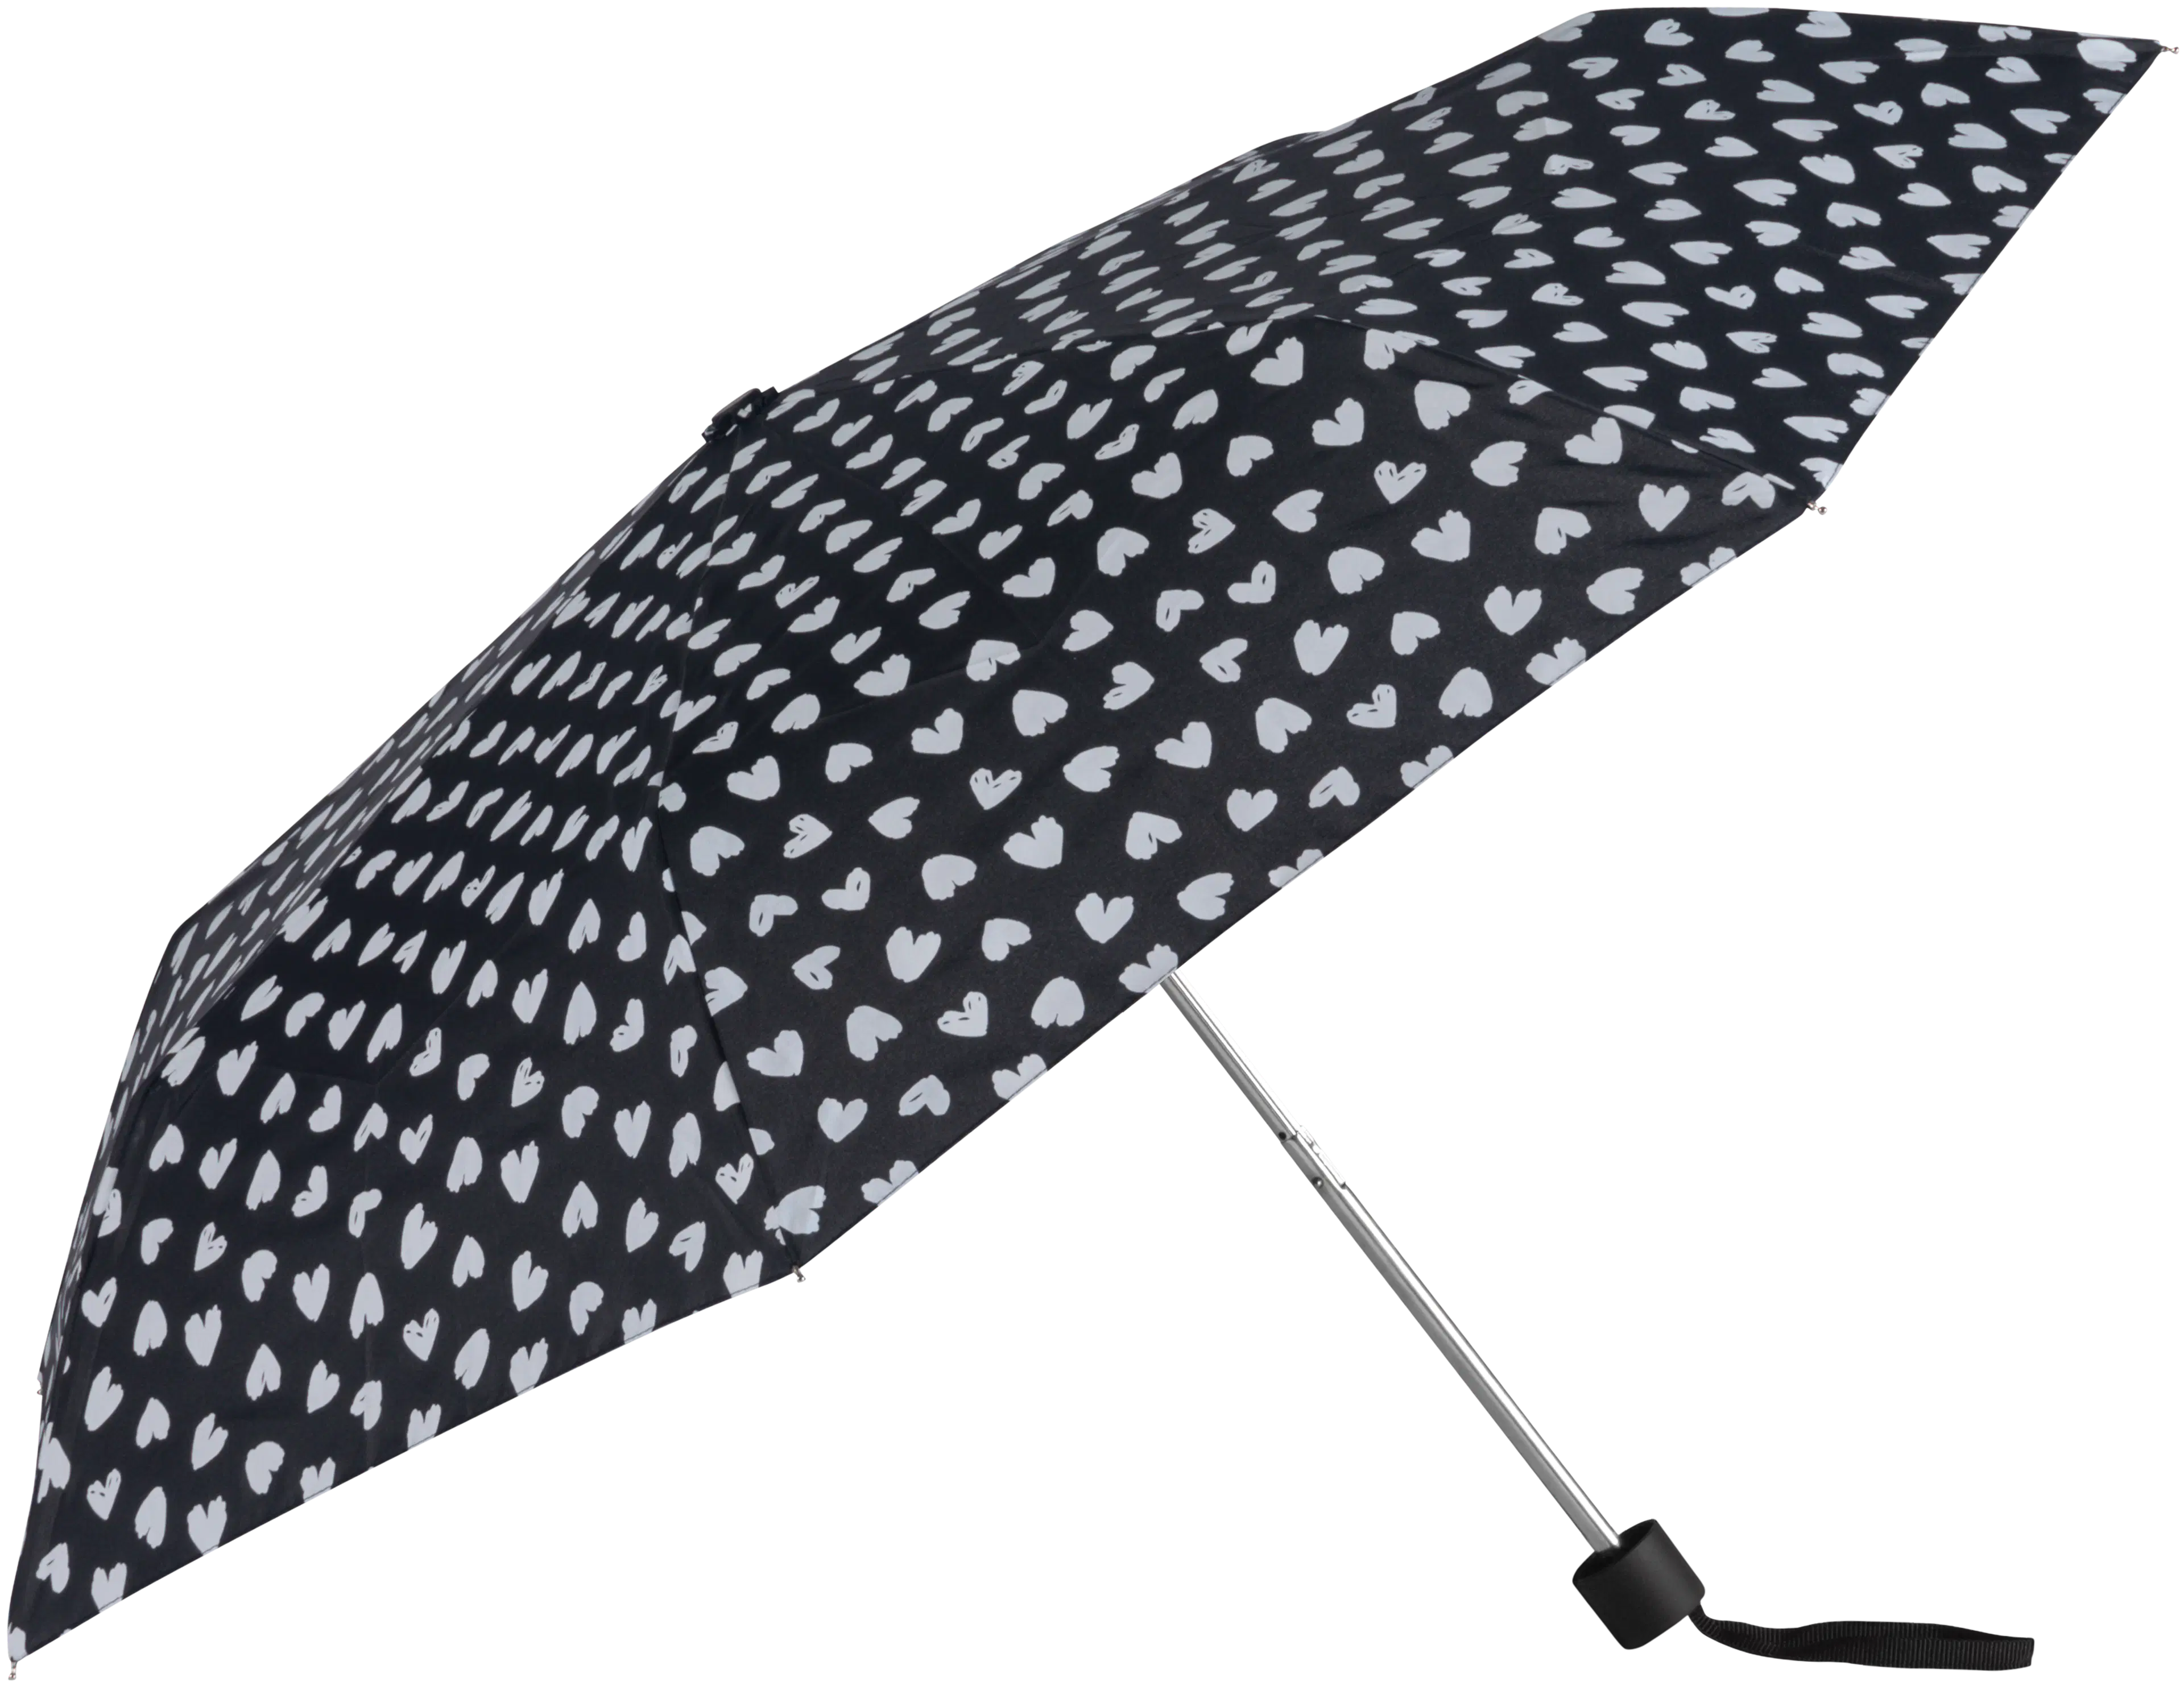 Lasessor manuaali sateenvarjo